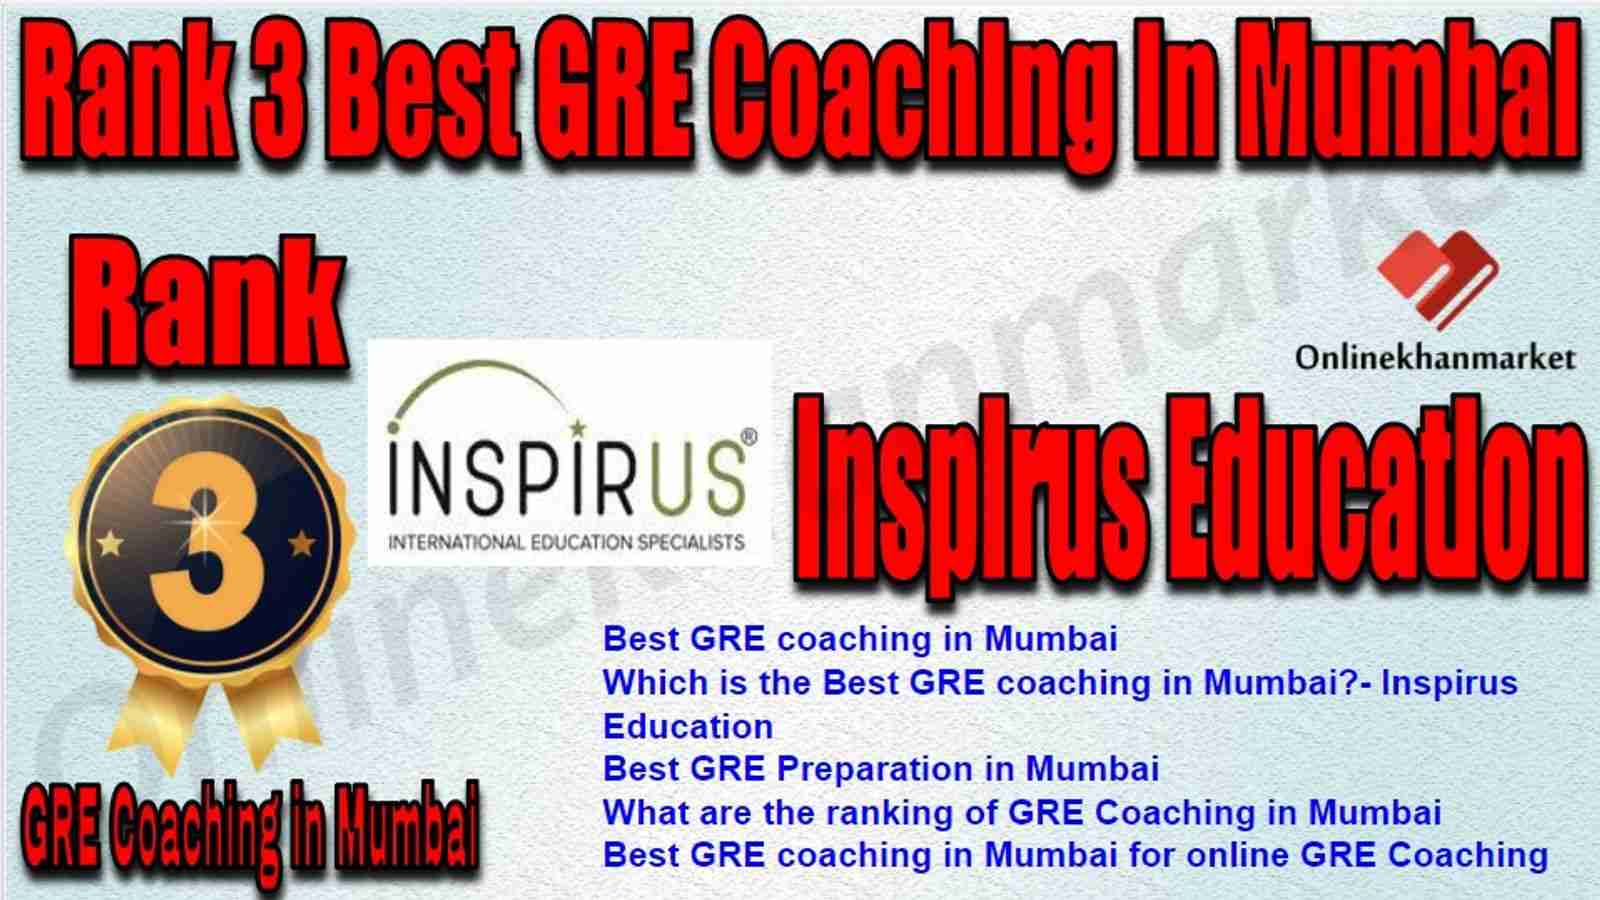 Rank 3 Best GRE Coaching in Mumbai